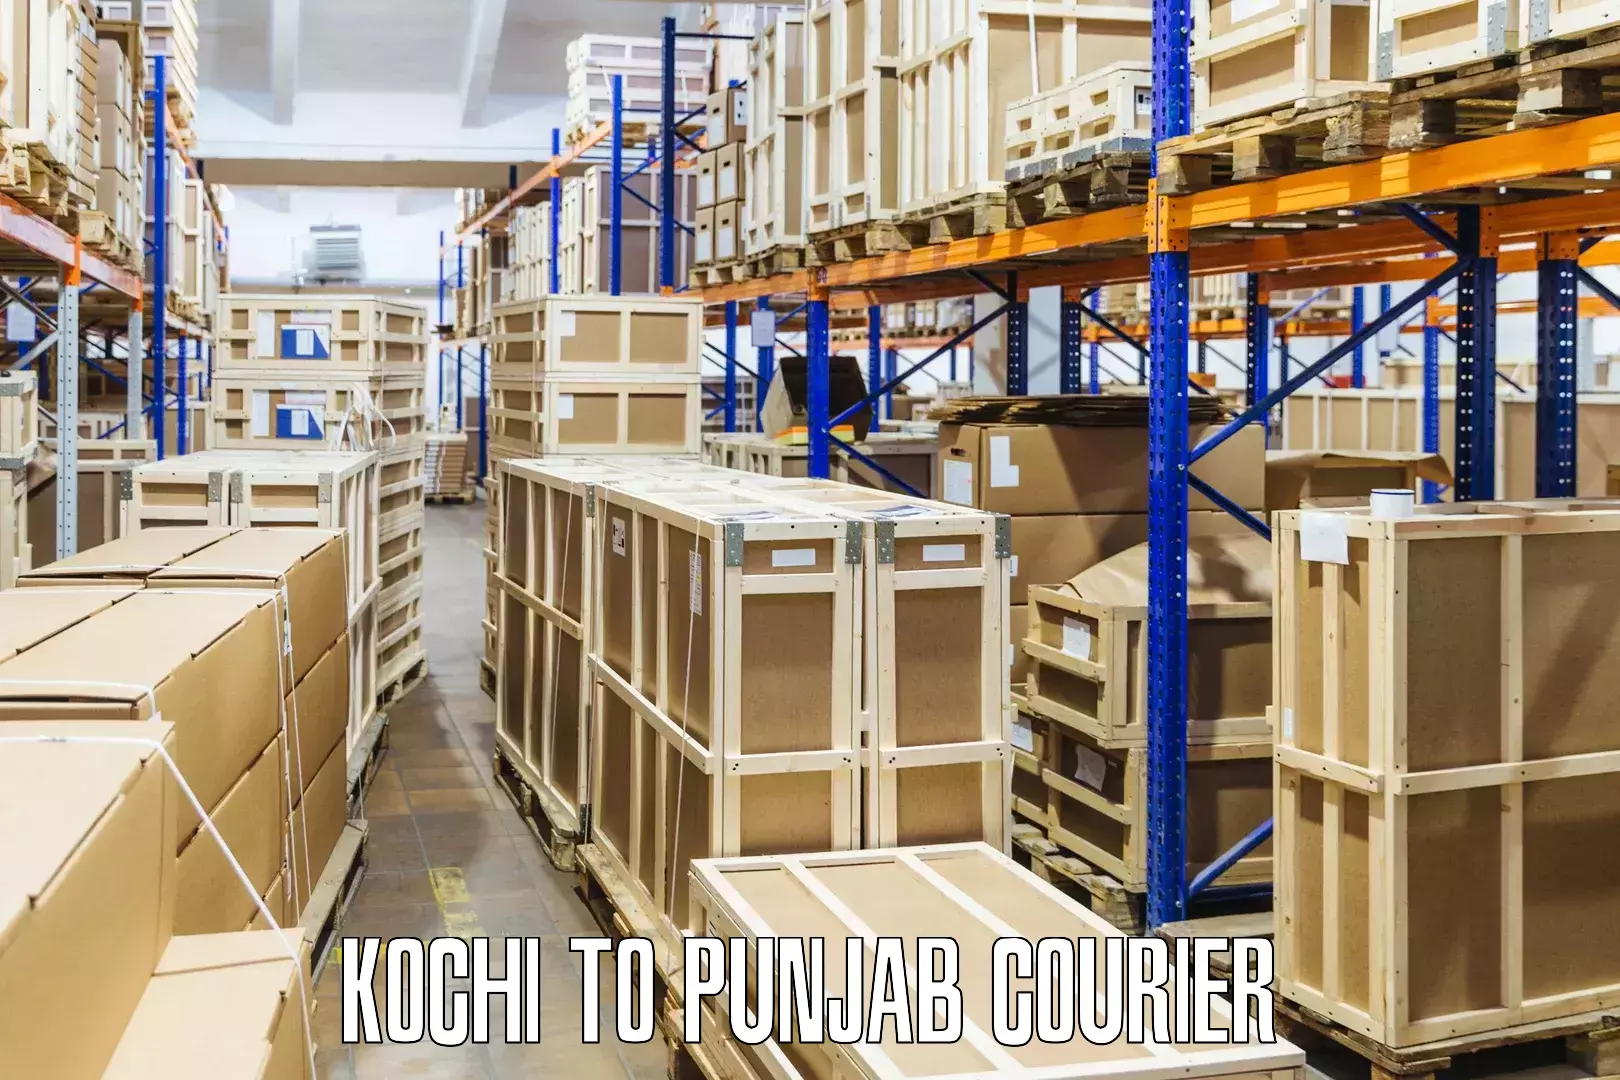 Smart parcel delivery Kochi to Punjab